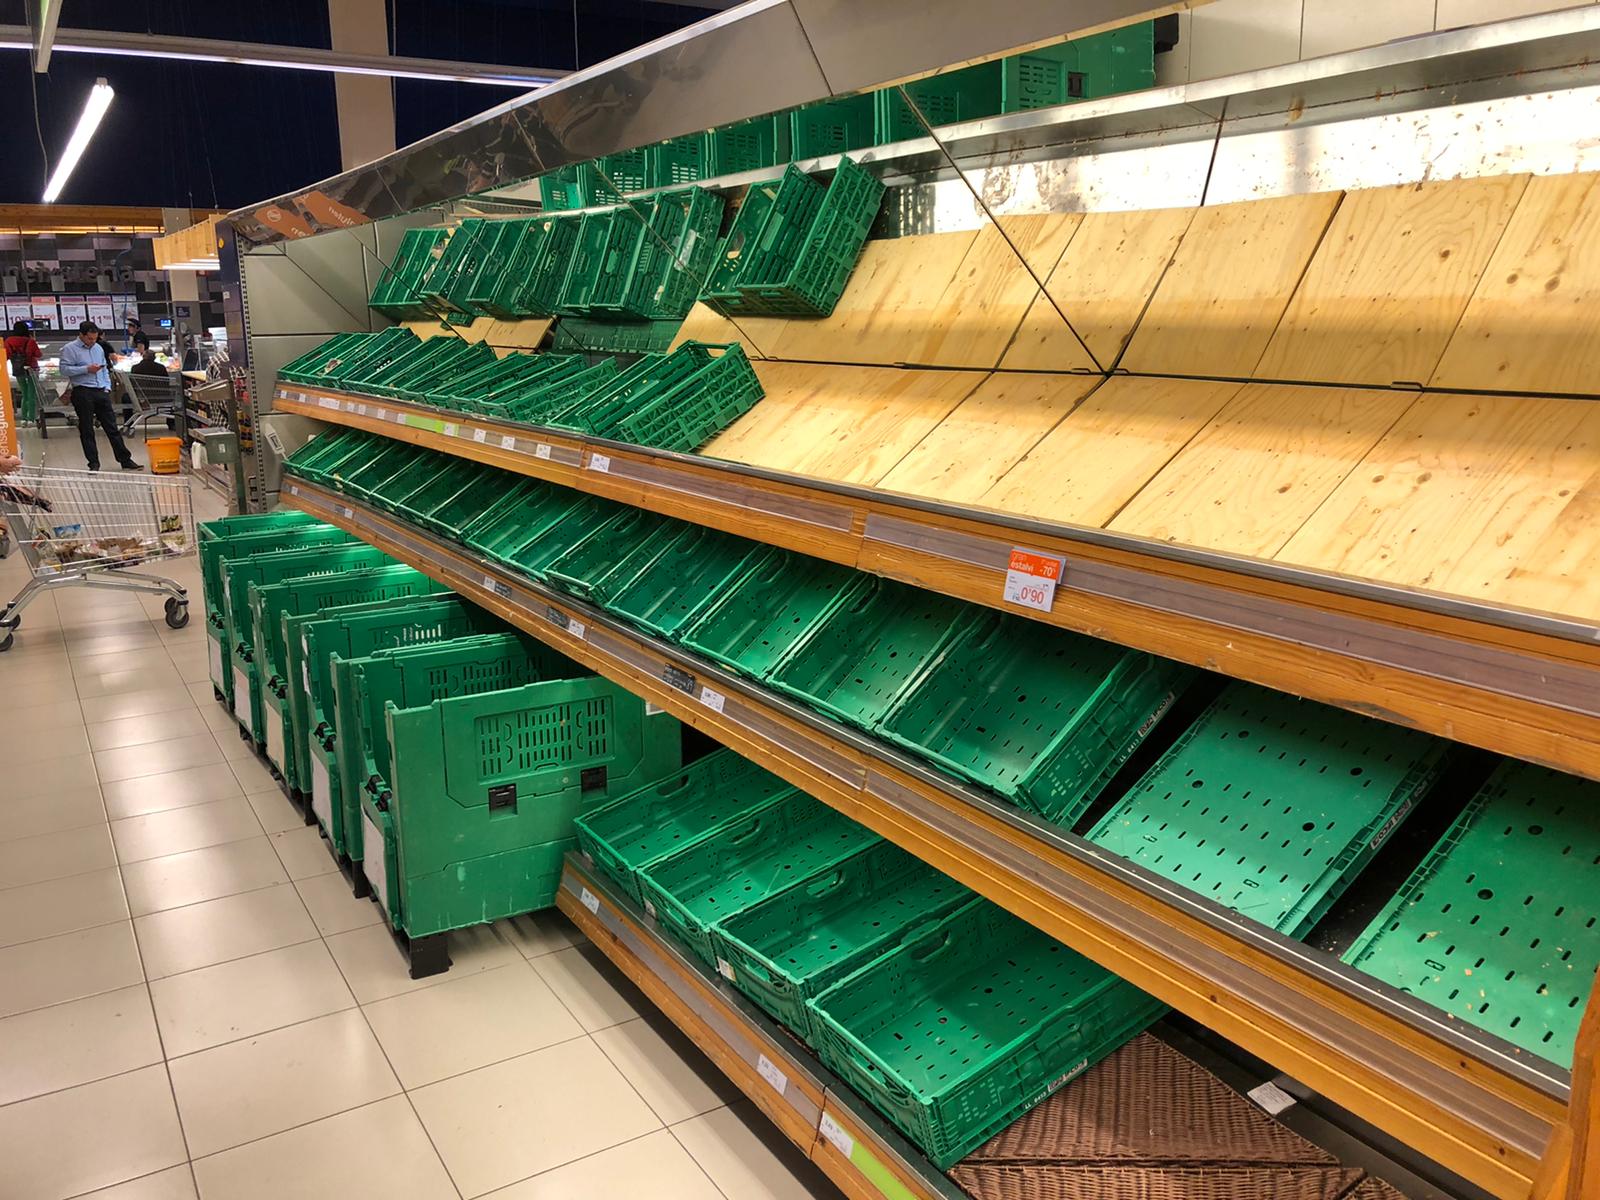 L'alarma pel coronavirus buida els prestatges dels supermercats catalans